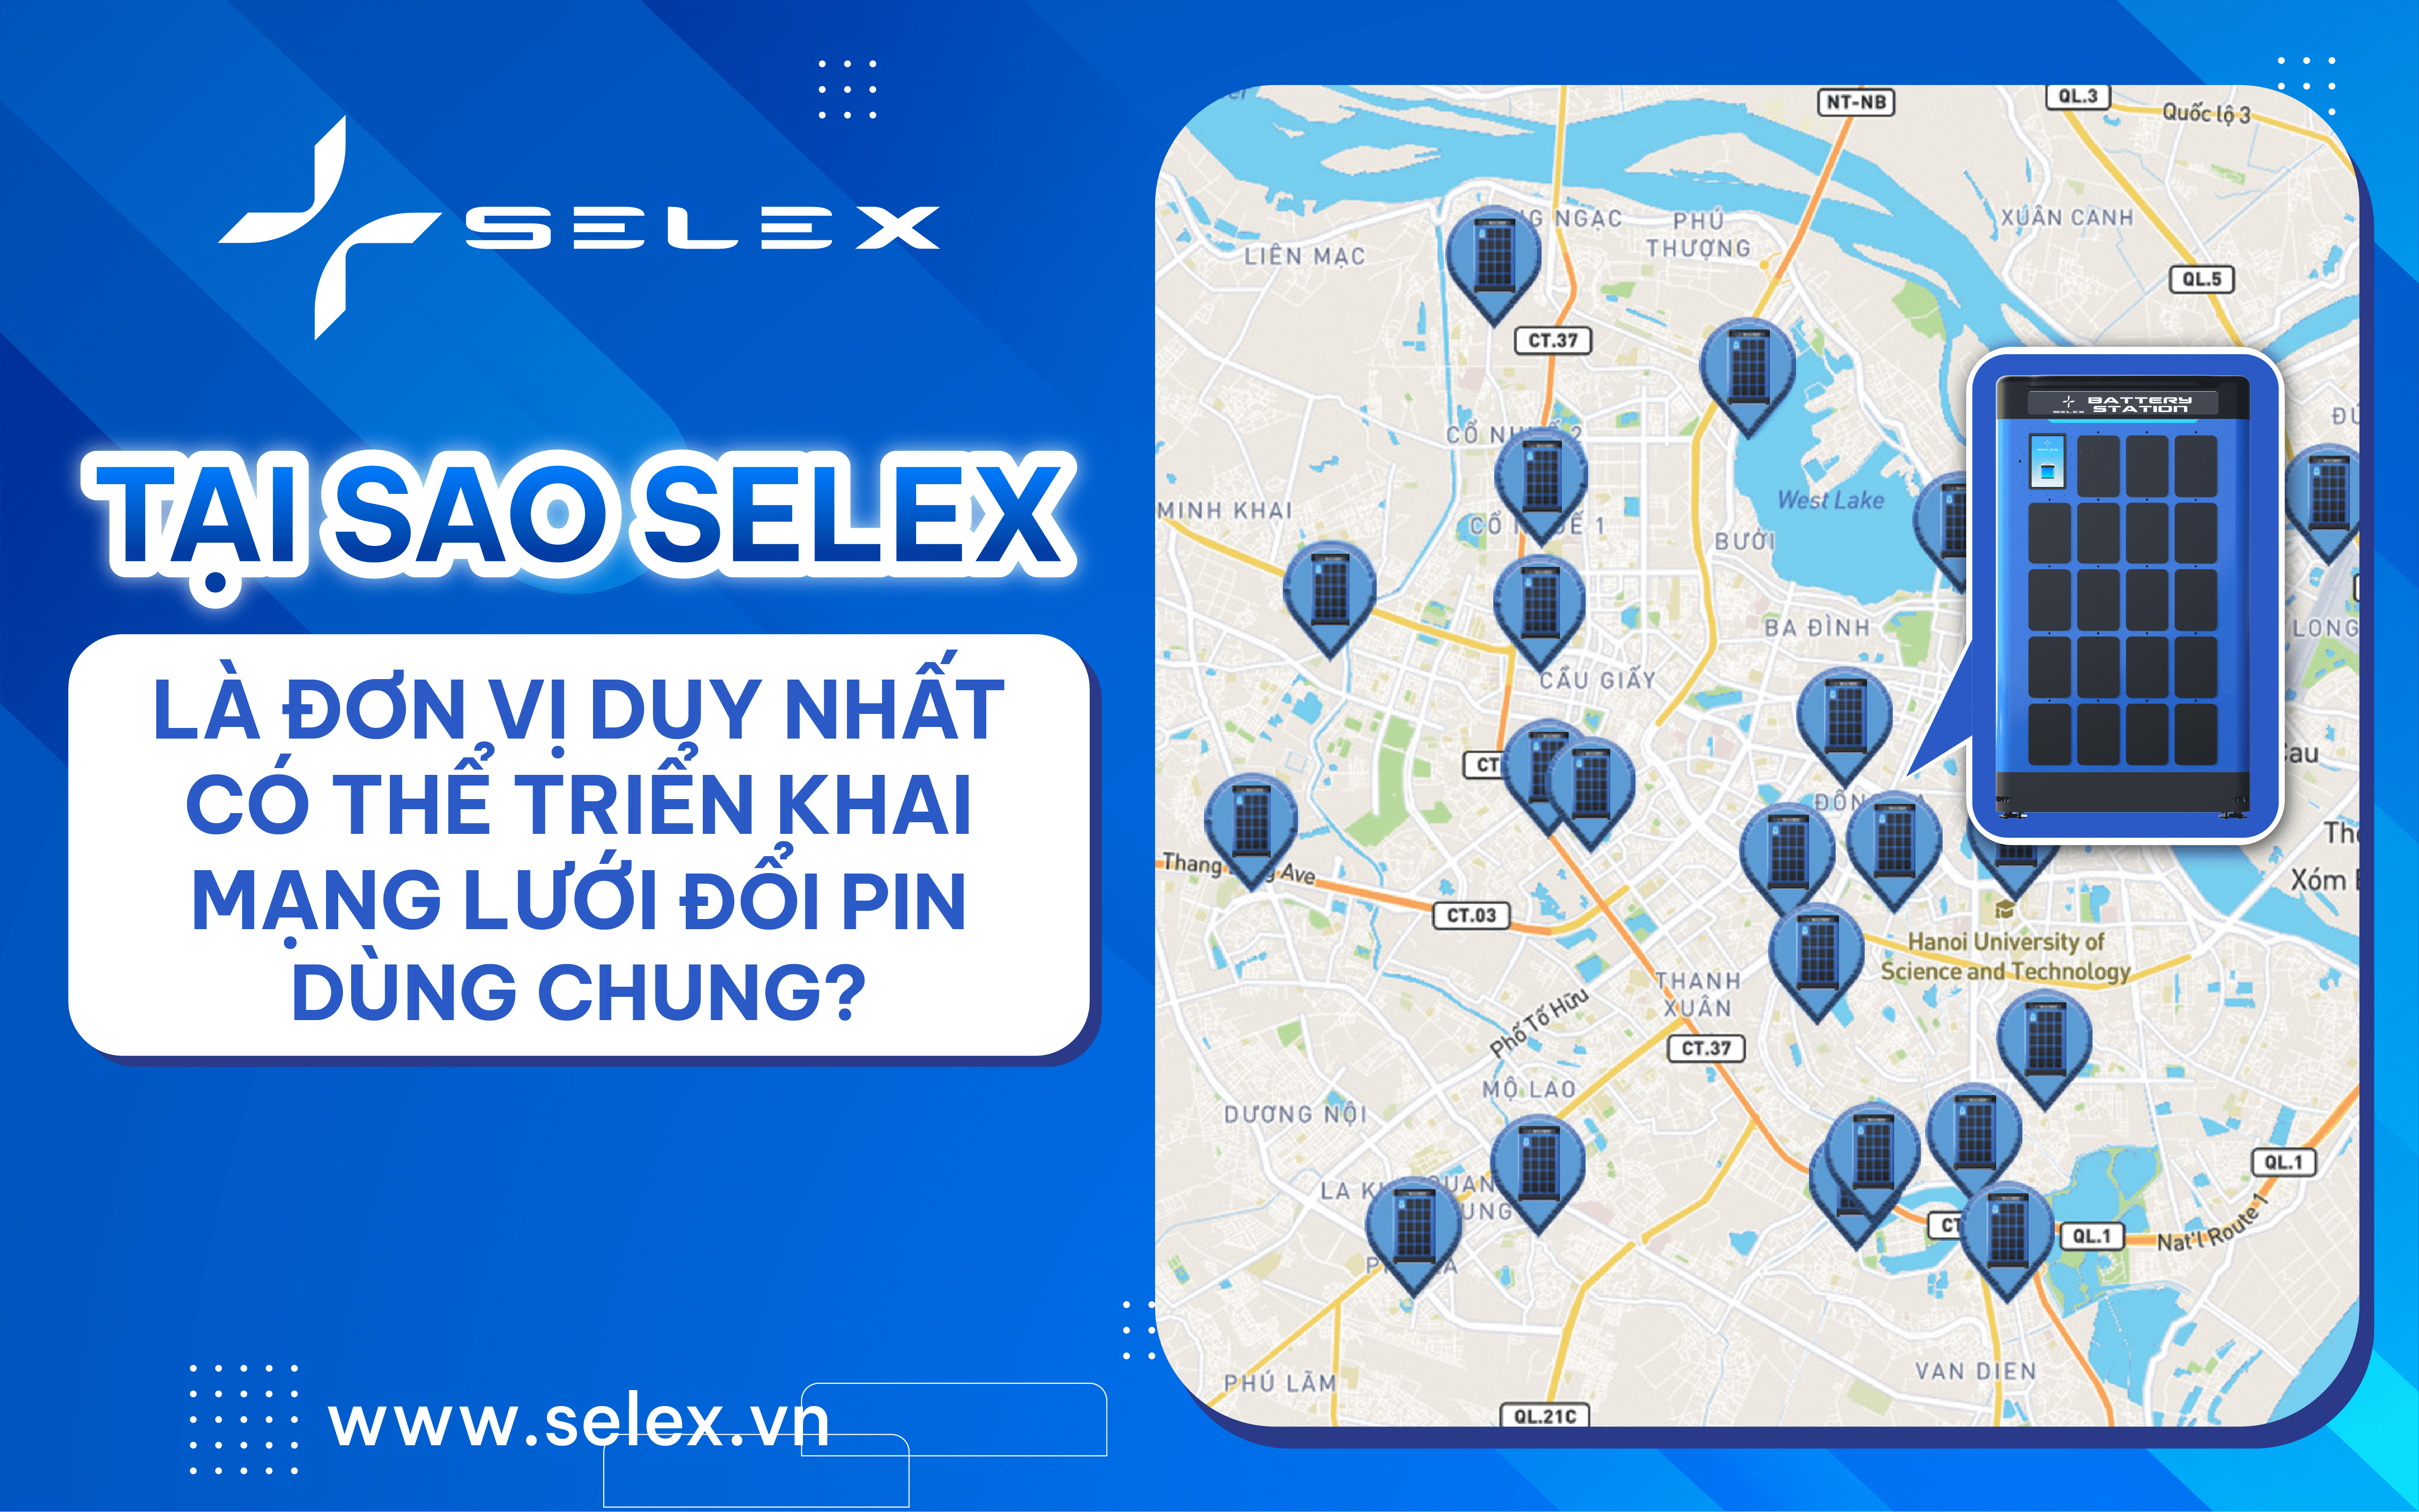 Selex Motors mạng lưới đổi pin tiên phong và hàng đầu Việt Nam